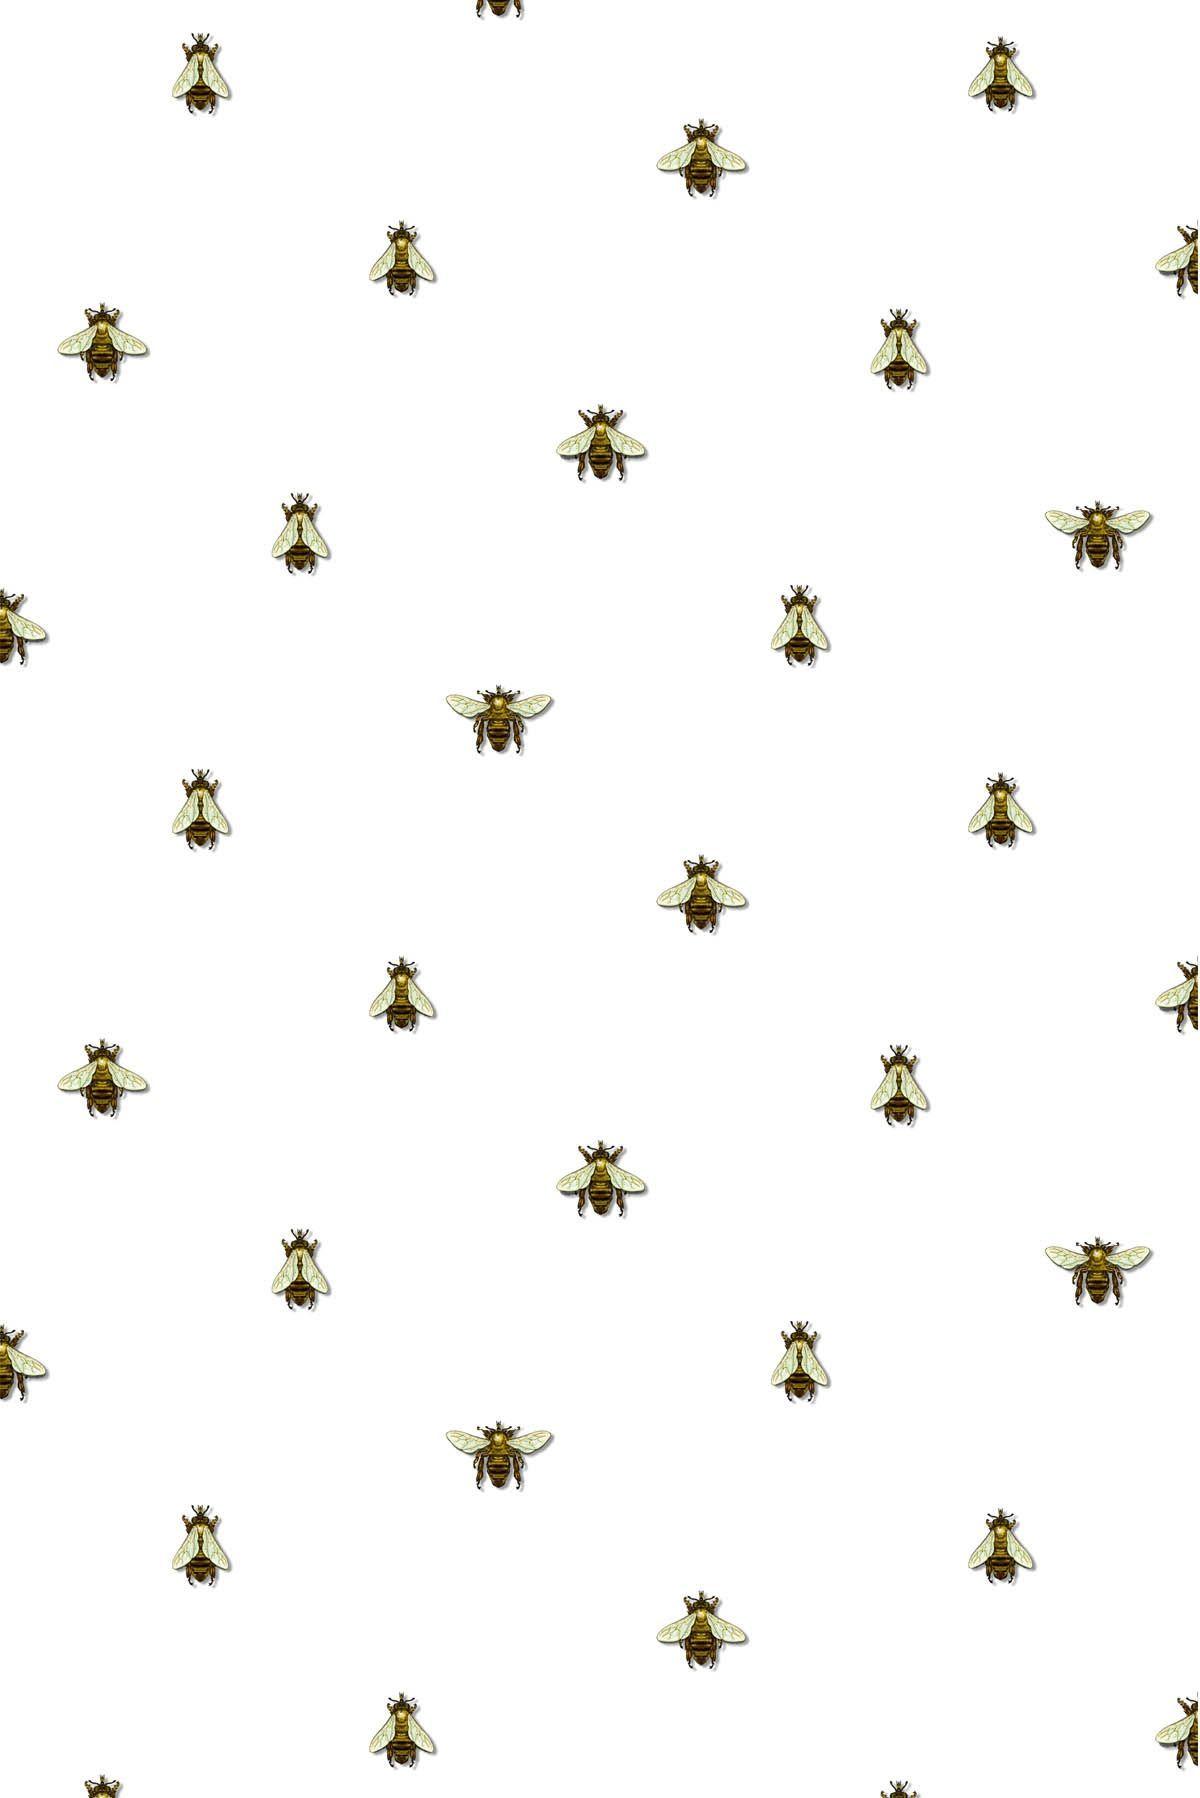 Bee wallpaper Gallery